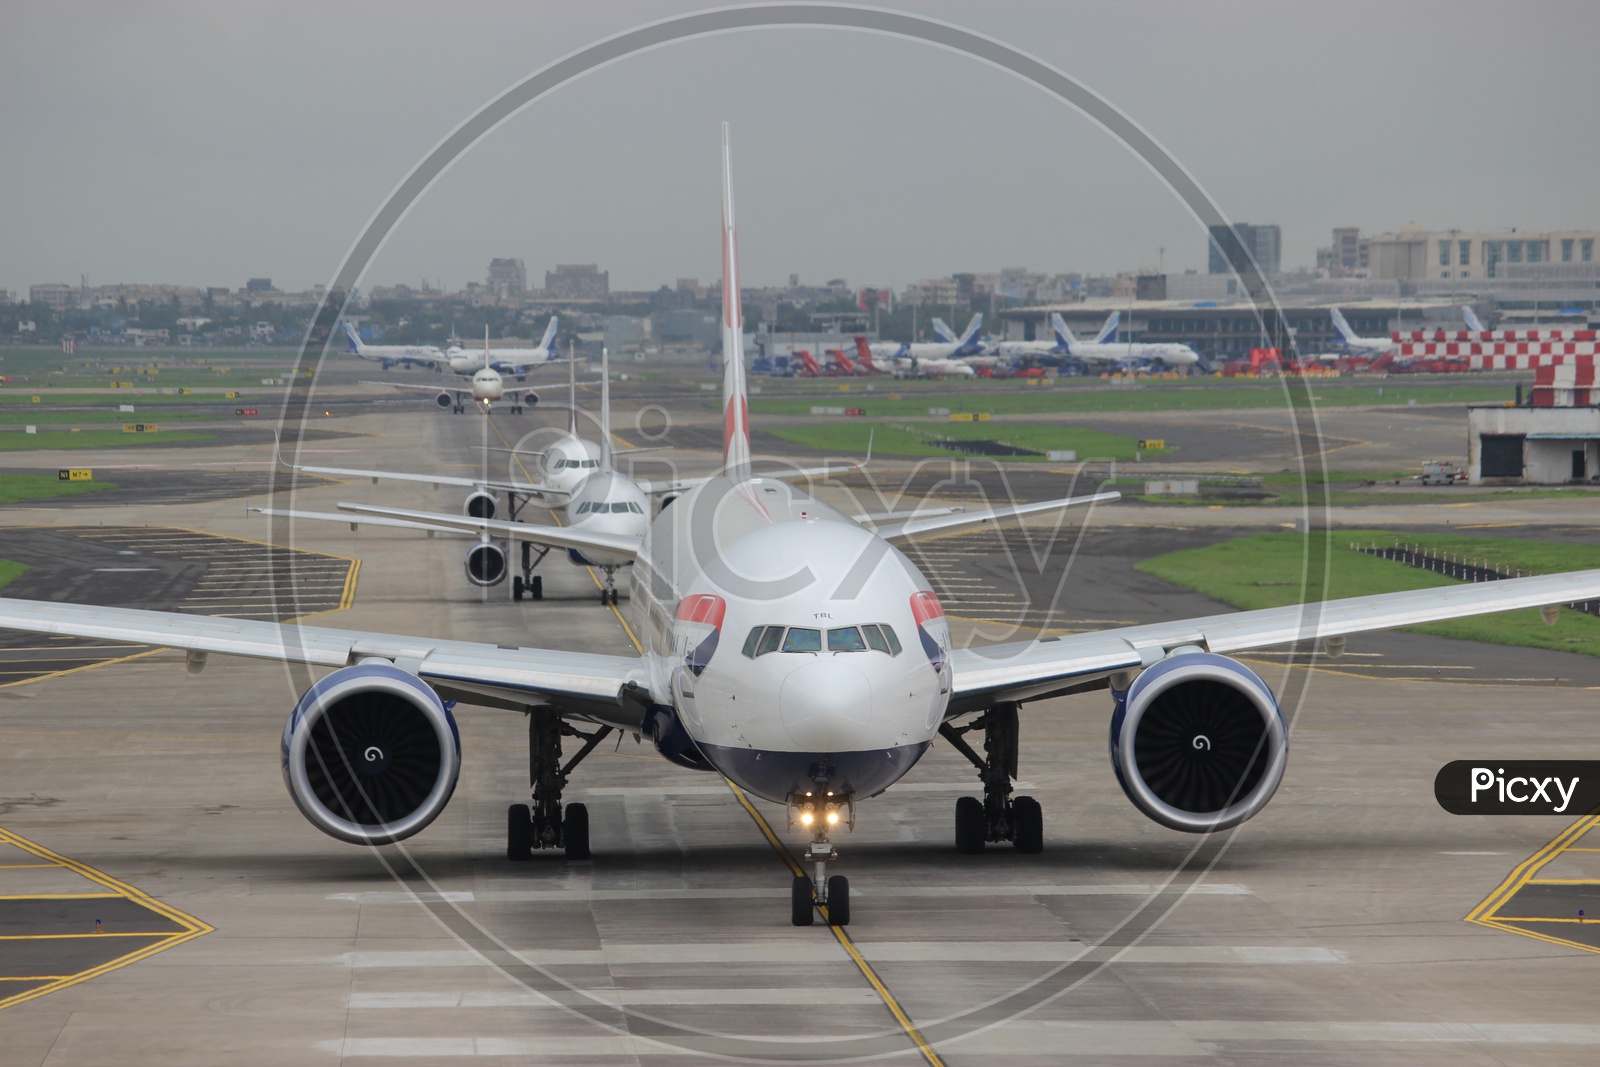 British Airways 777 leading the departure